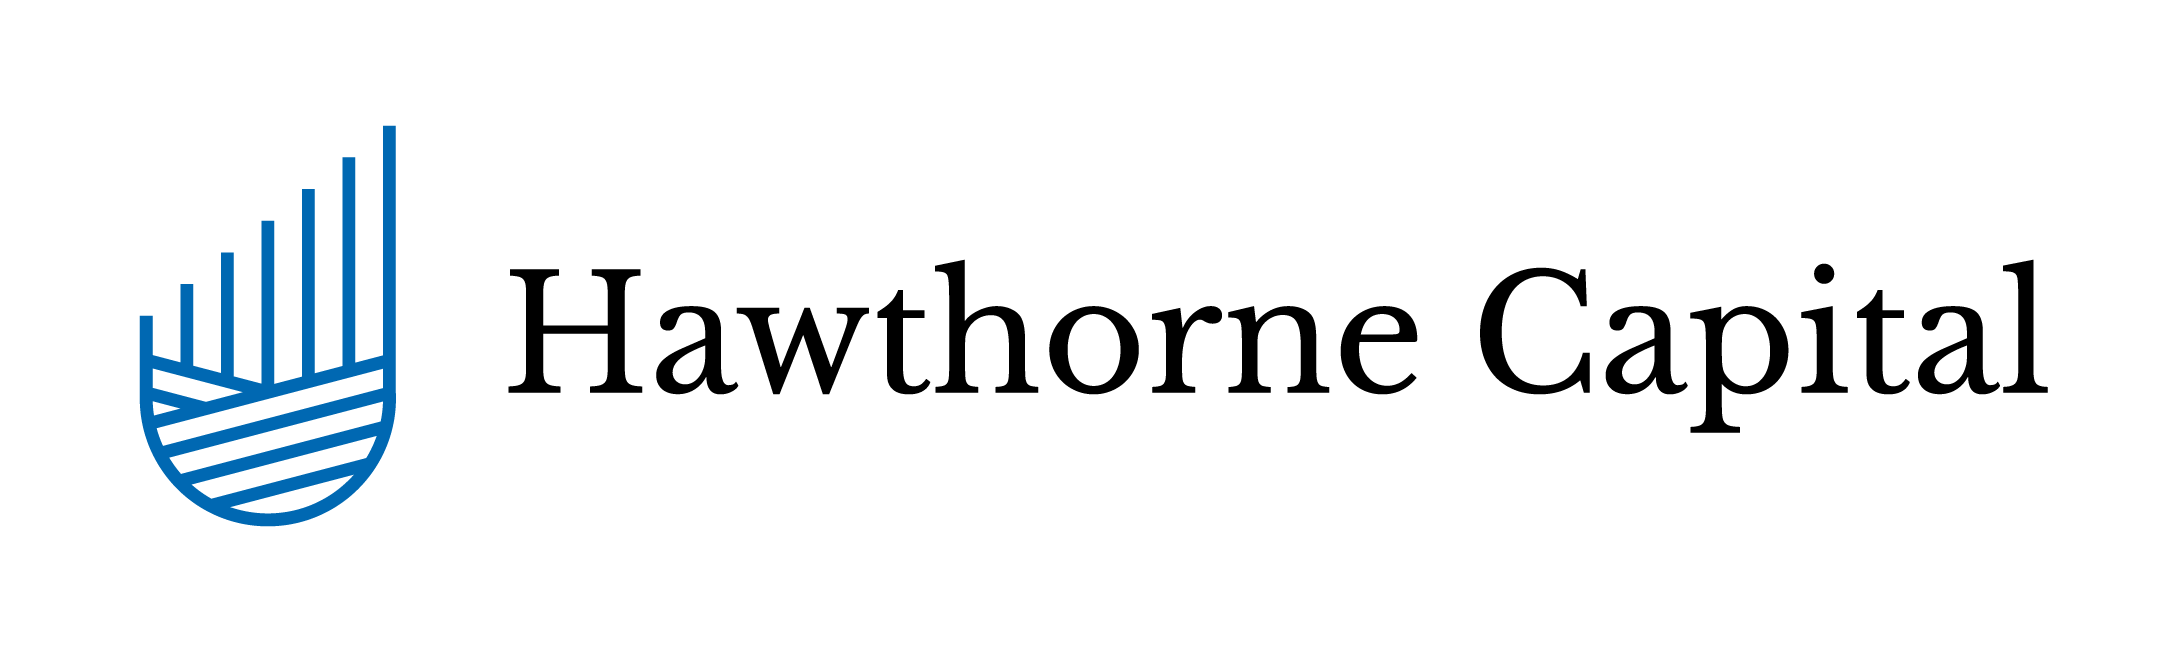 Hawthorne-Capital-white-bg